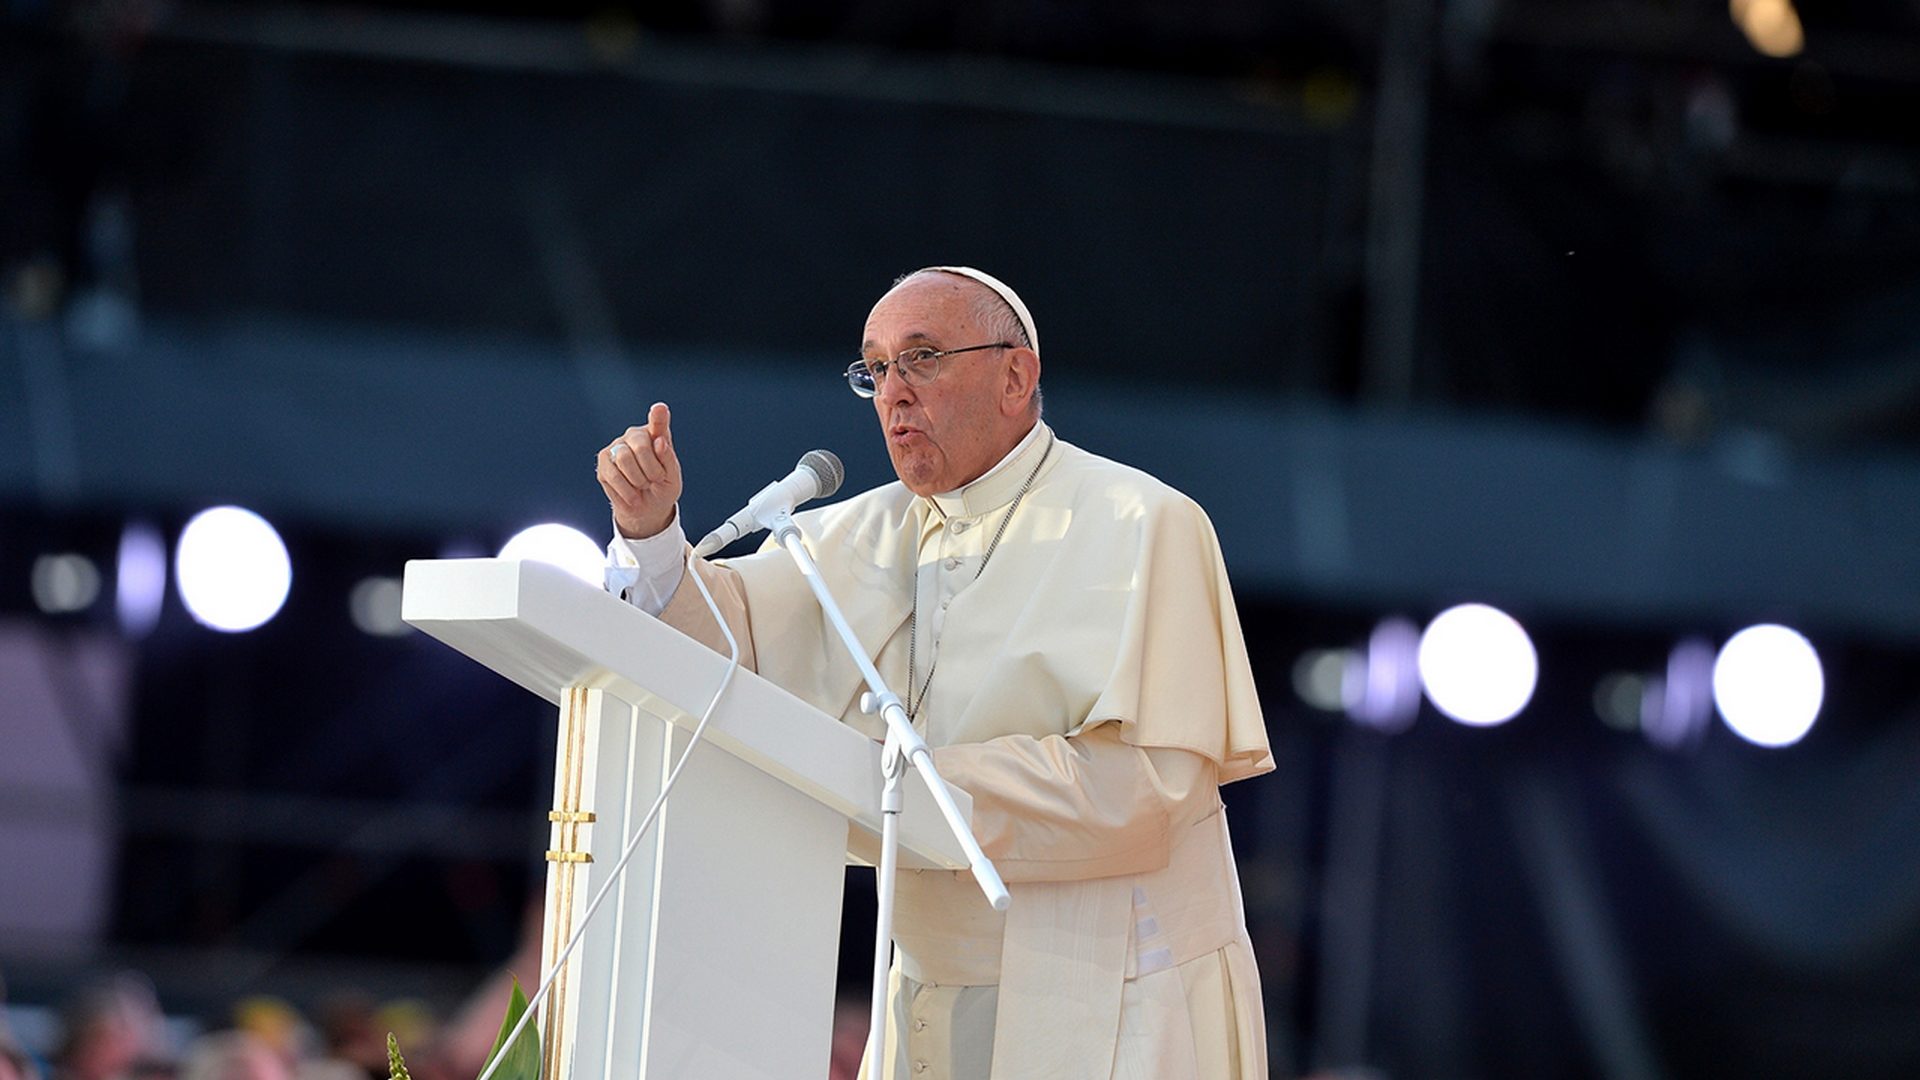 Après Cracovie et Rio, le pape aura l'occasion de faire passer des messages forts auprès des jeunes. | © Mazur/episkopat.pl 